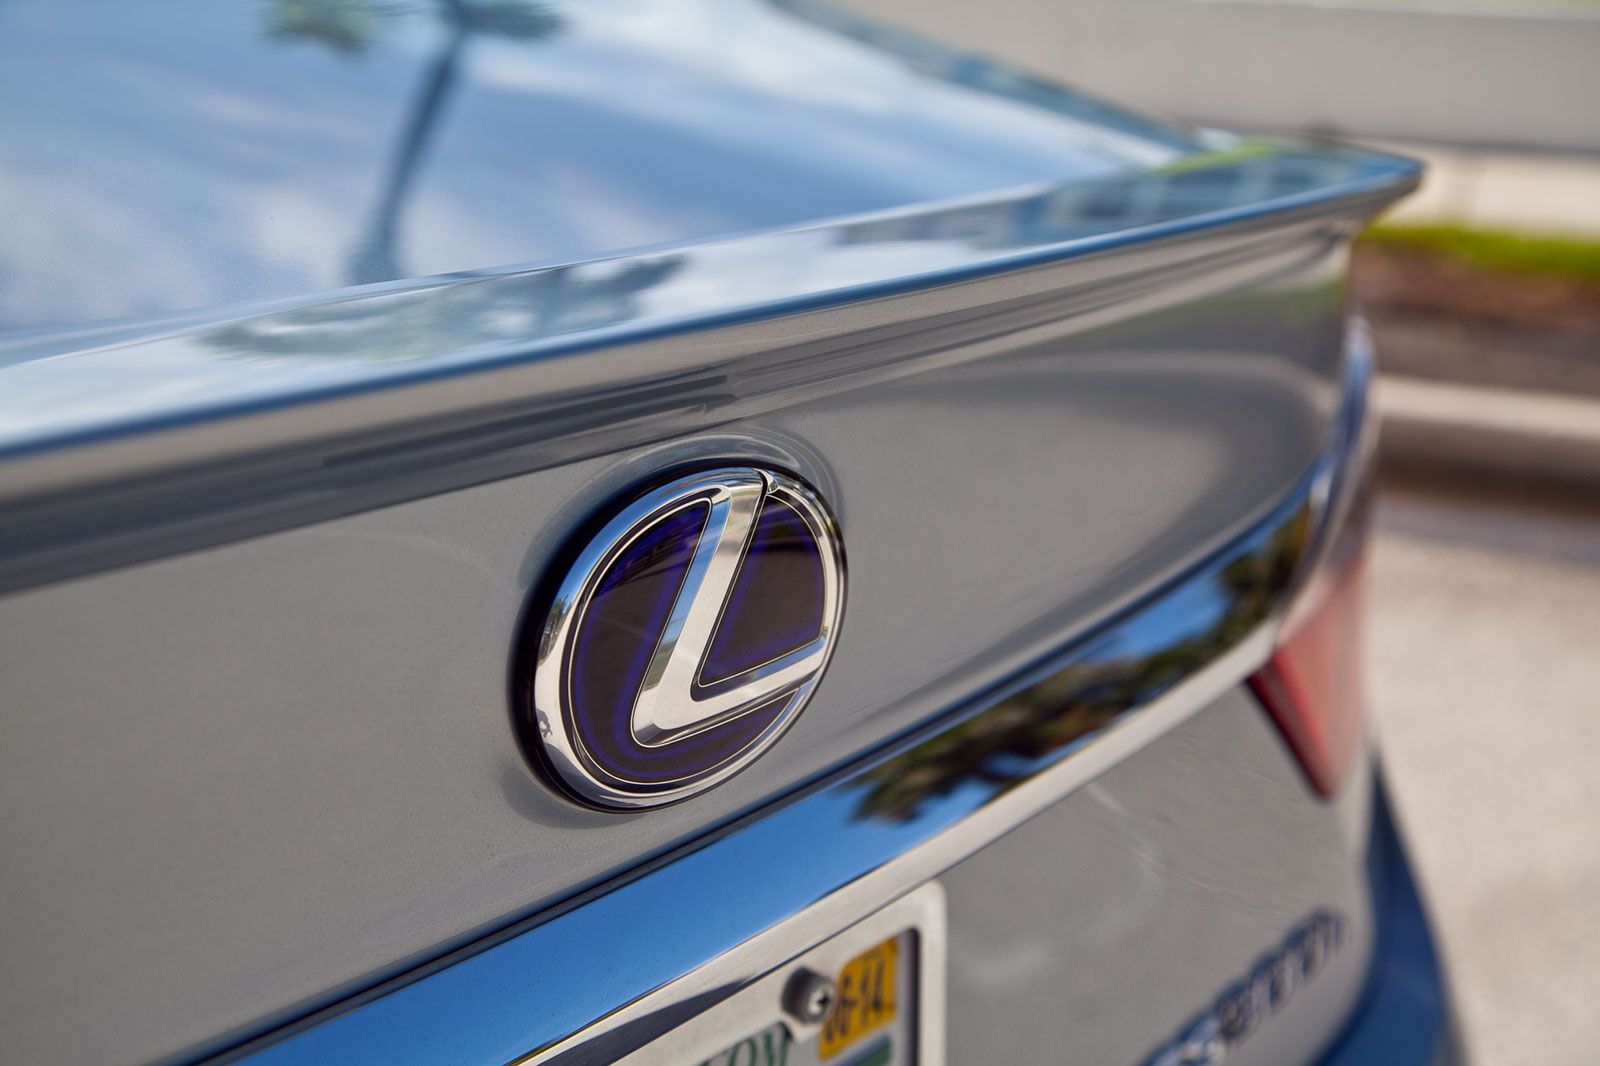 2013 - 2014 Lexus ES 300h